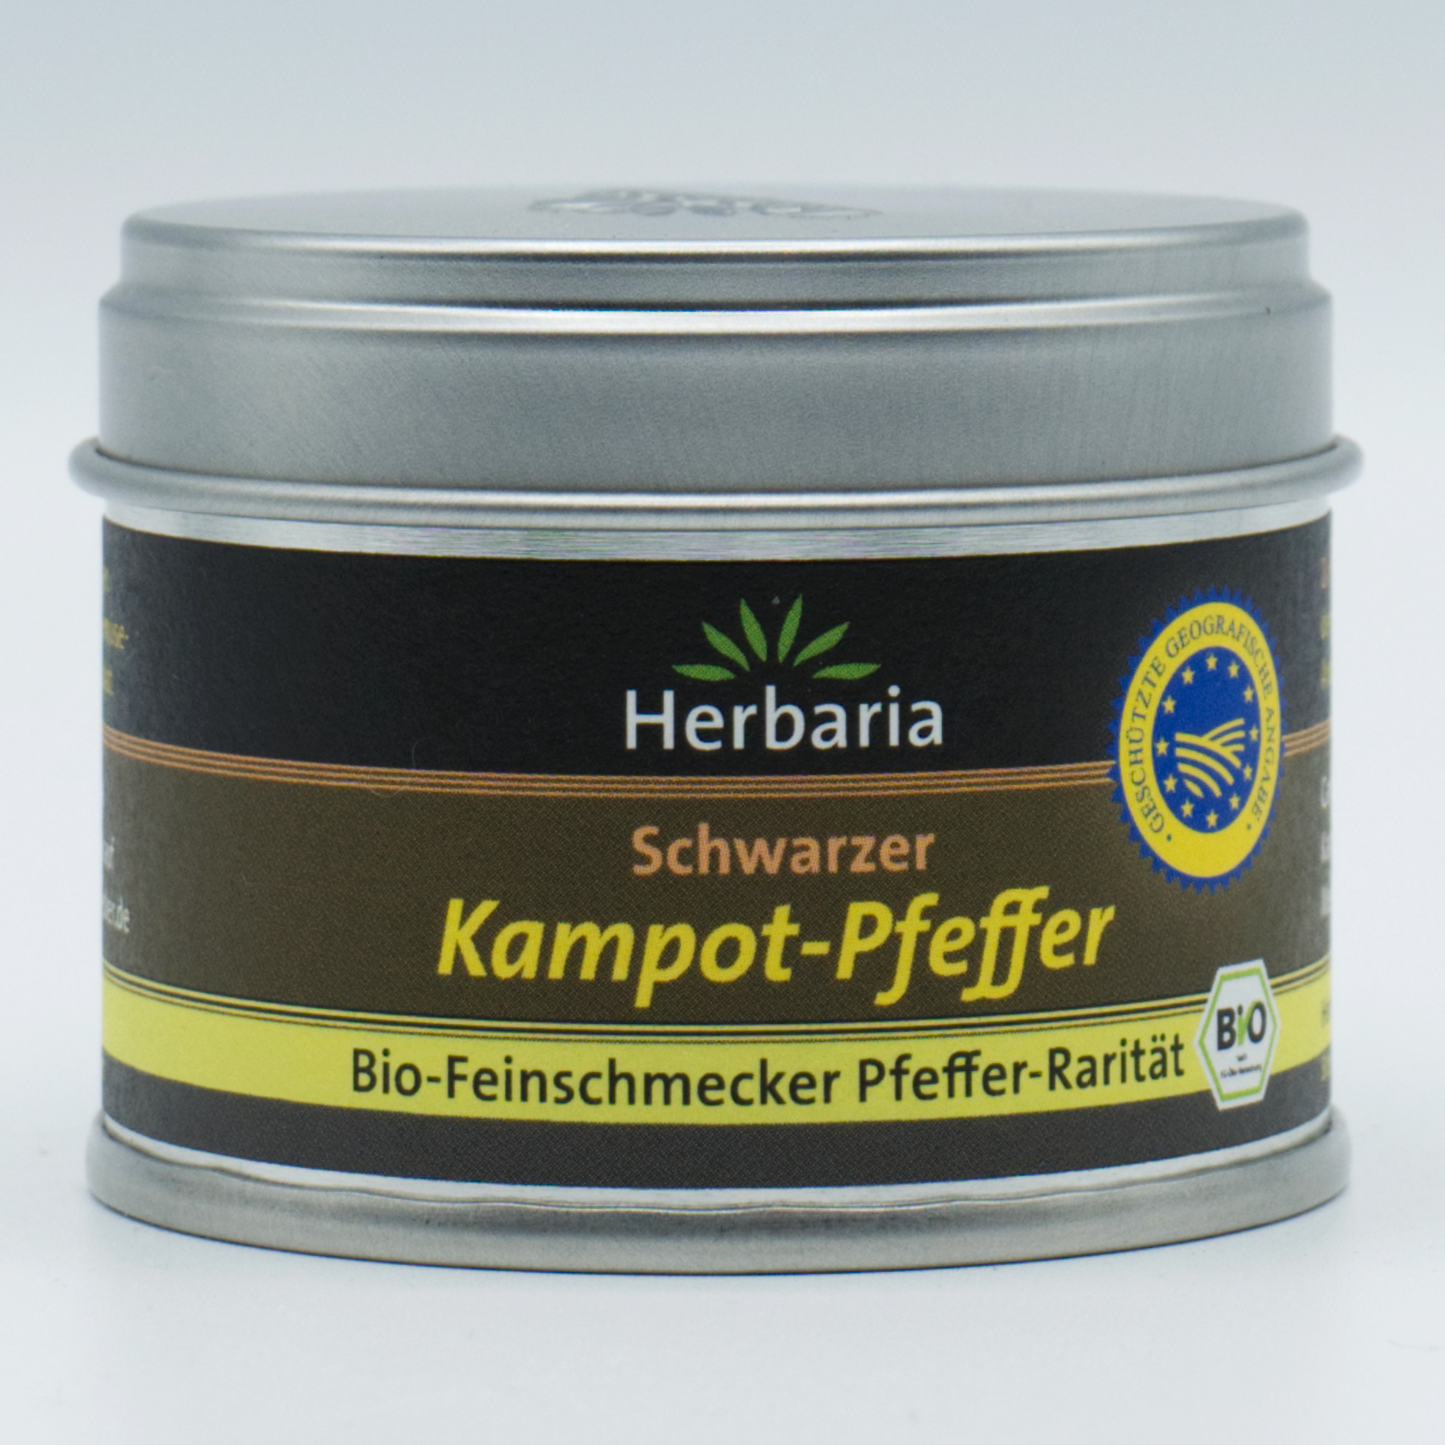 Schwarzer Kompot-Pfeffer Herbaria 30 g